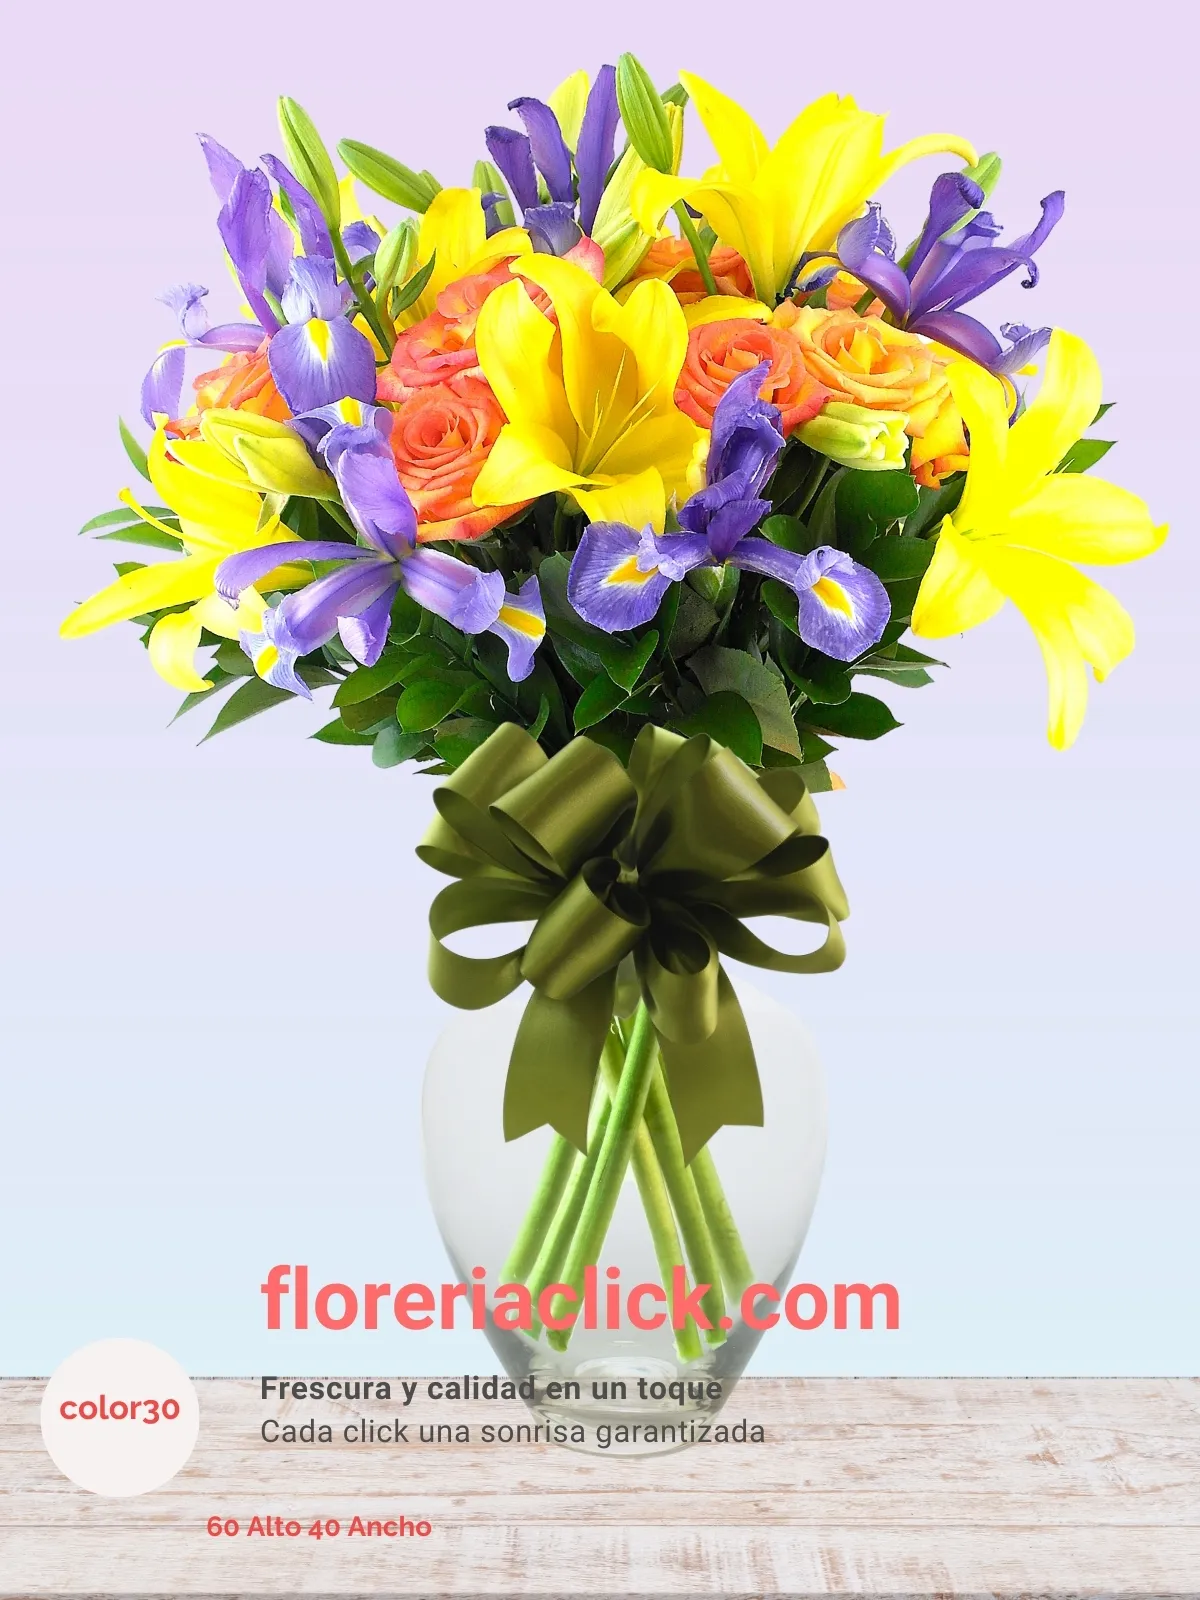 Arreglo Floral “Belleza Natural” – 35 Flores de Iris, Lilies y Rosas Frescas